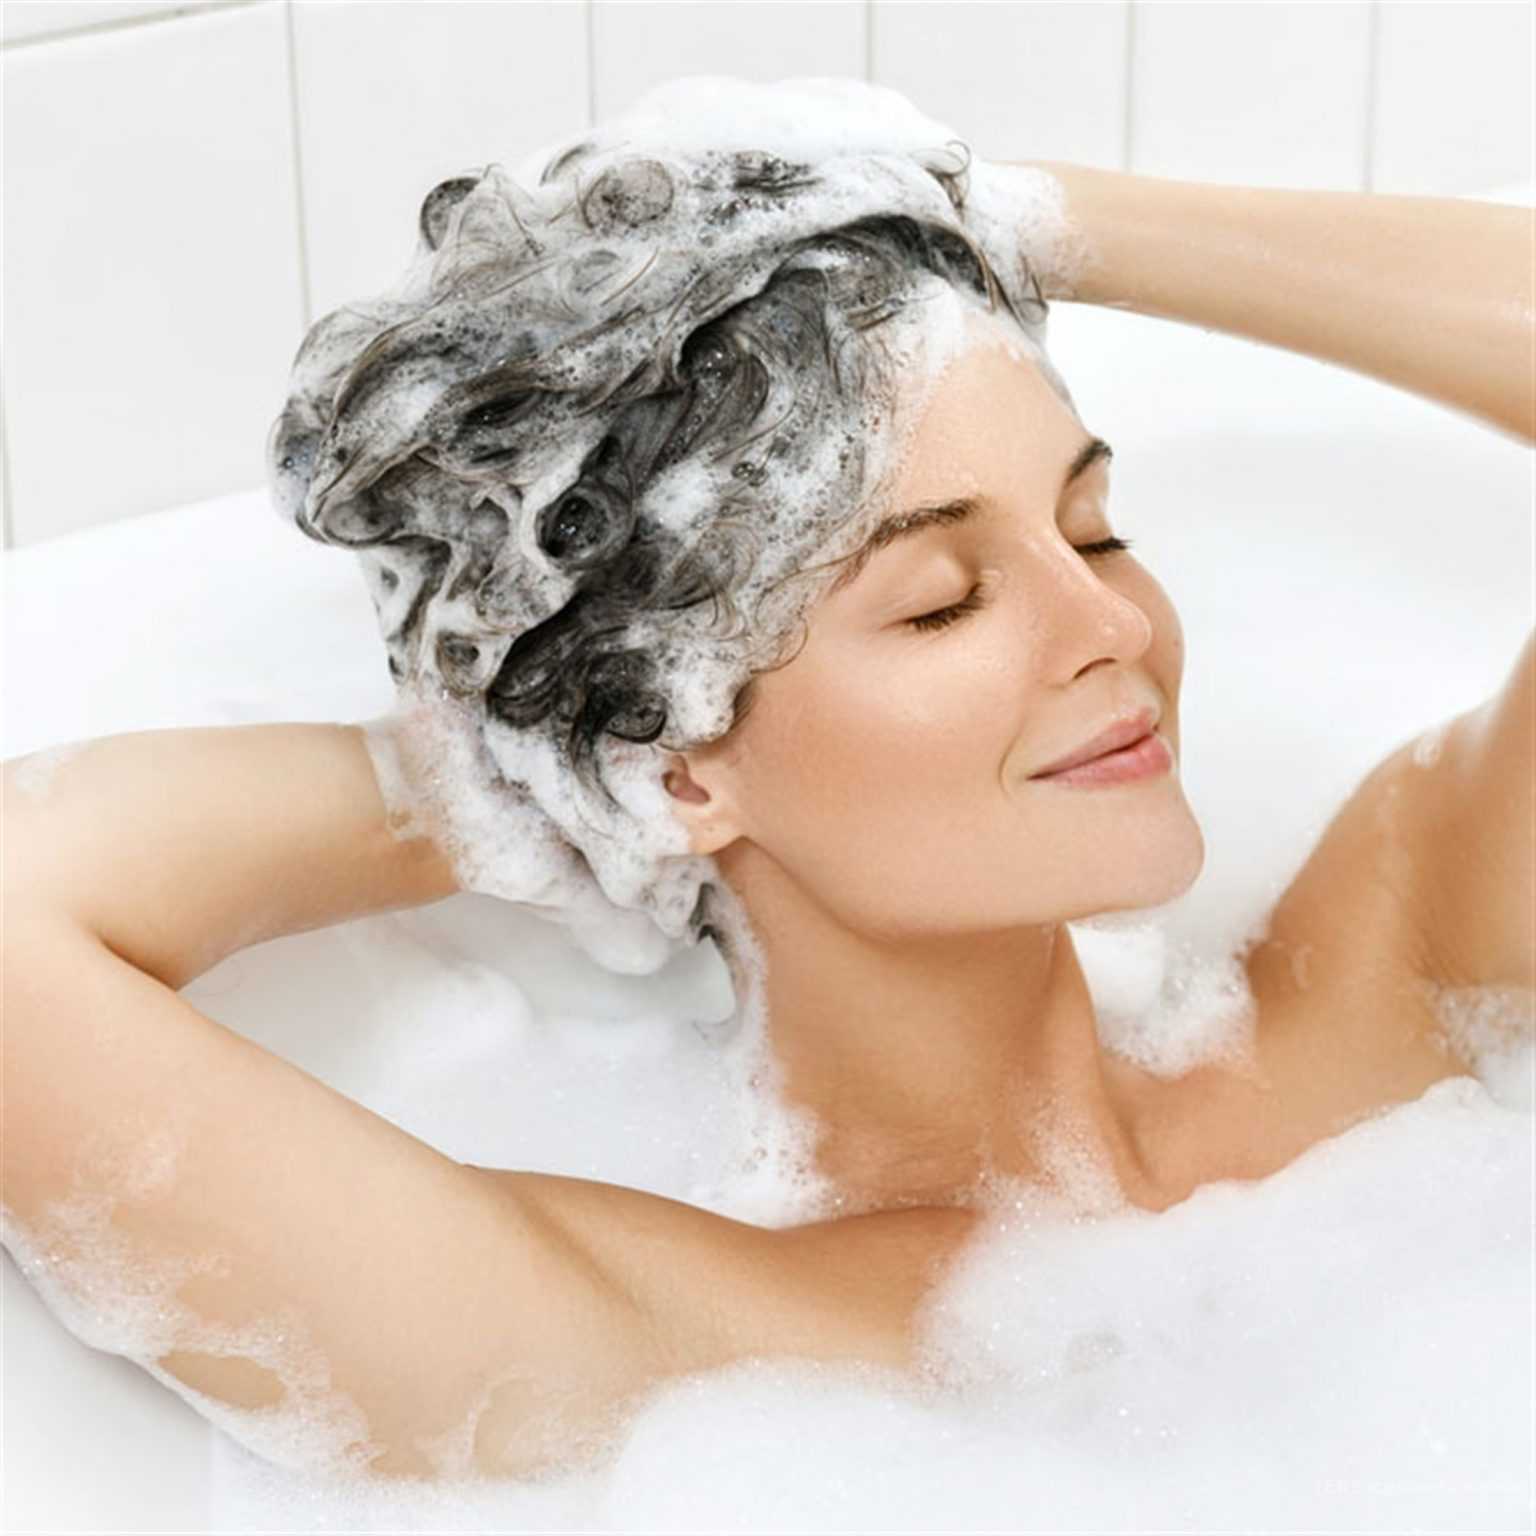 Можно ли мыть голову хозяйственным мылом: что будет с волосами, полезно ли, как правильно, как влияет, мнение экспертов